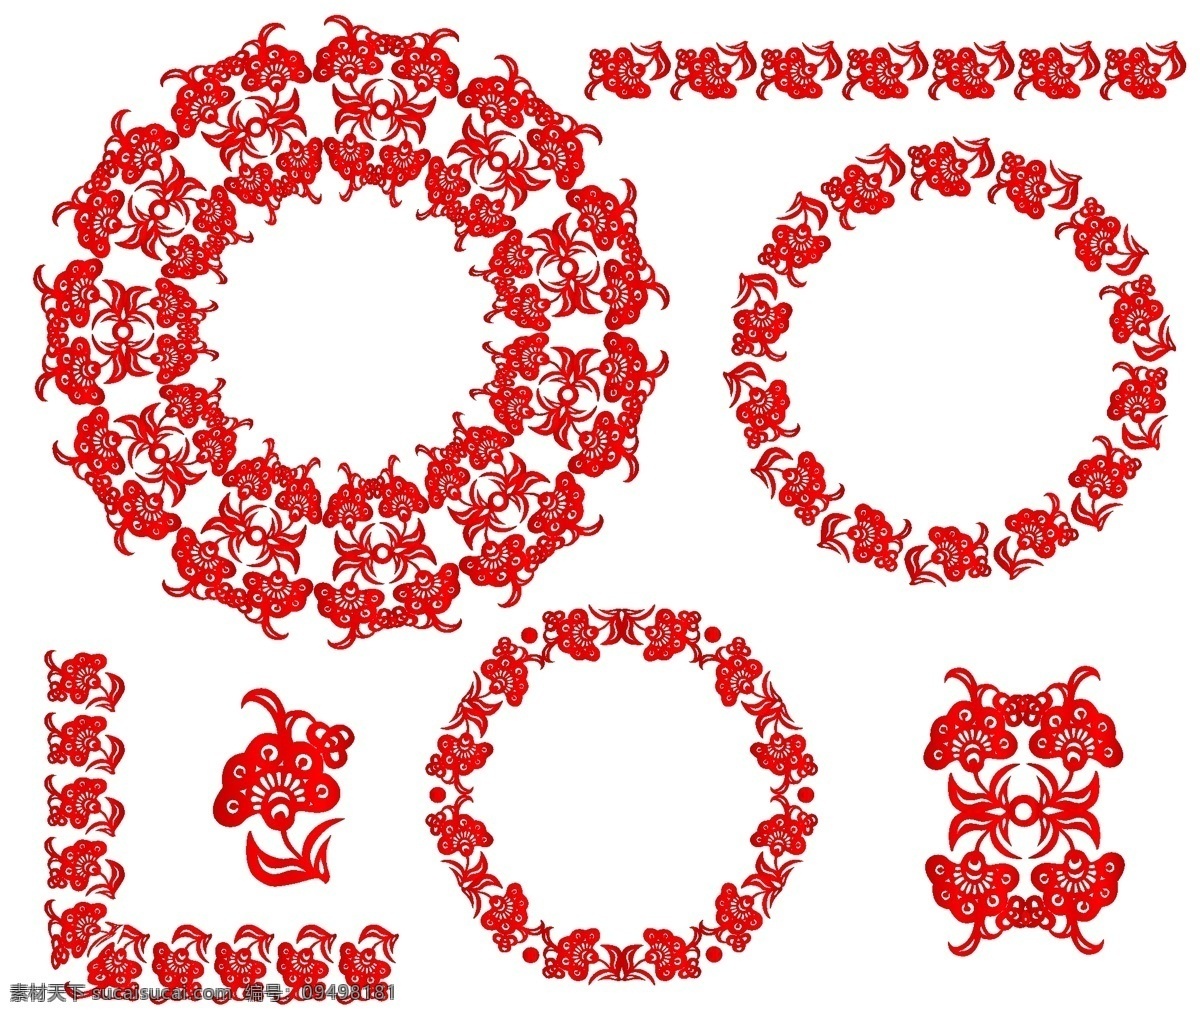 圆形 剪纸 中国 风 民族 生肖 矢量图 精美红色 花边 12生肖 民族特色 中国元素 文化